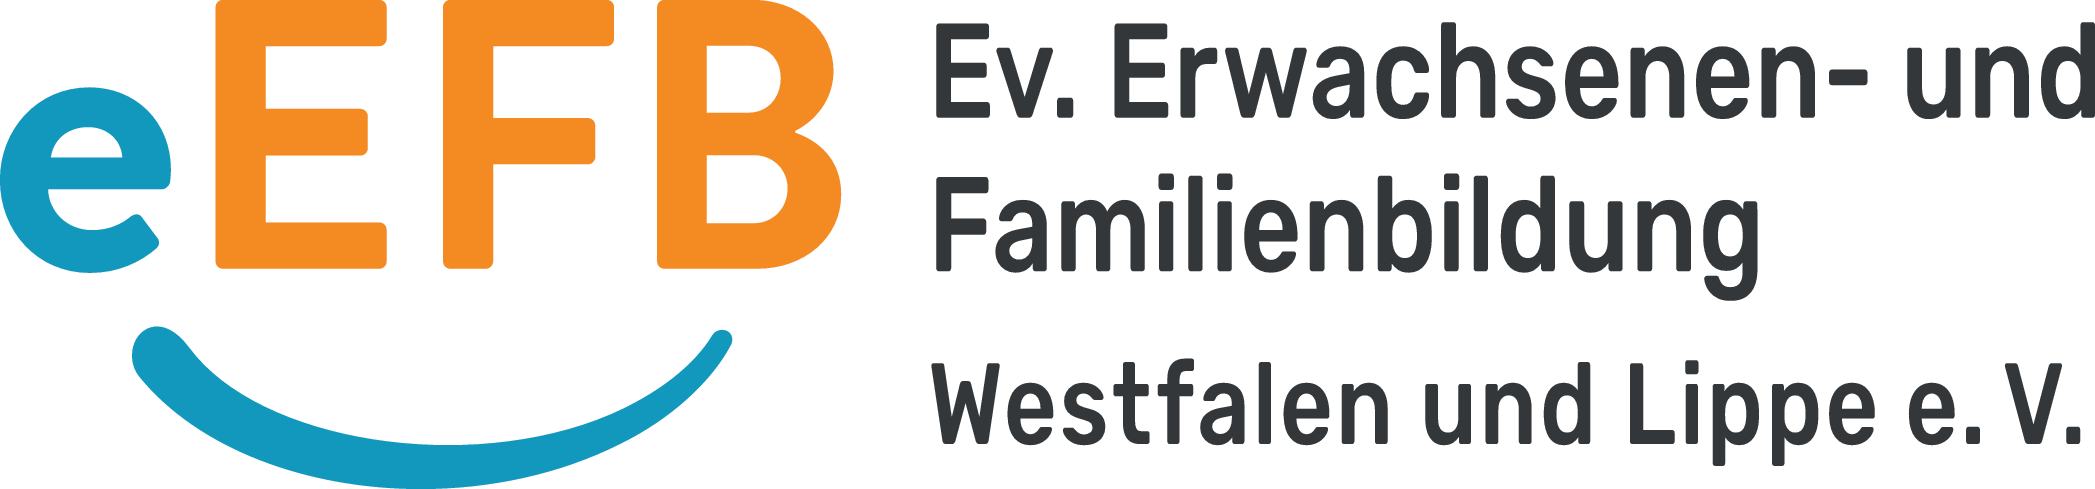 Logo FBW & EBW